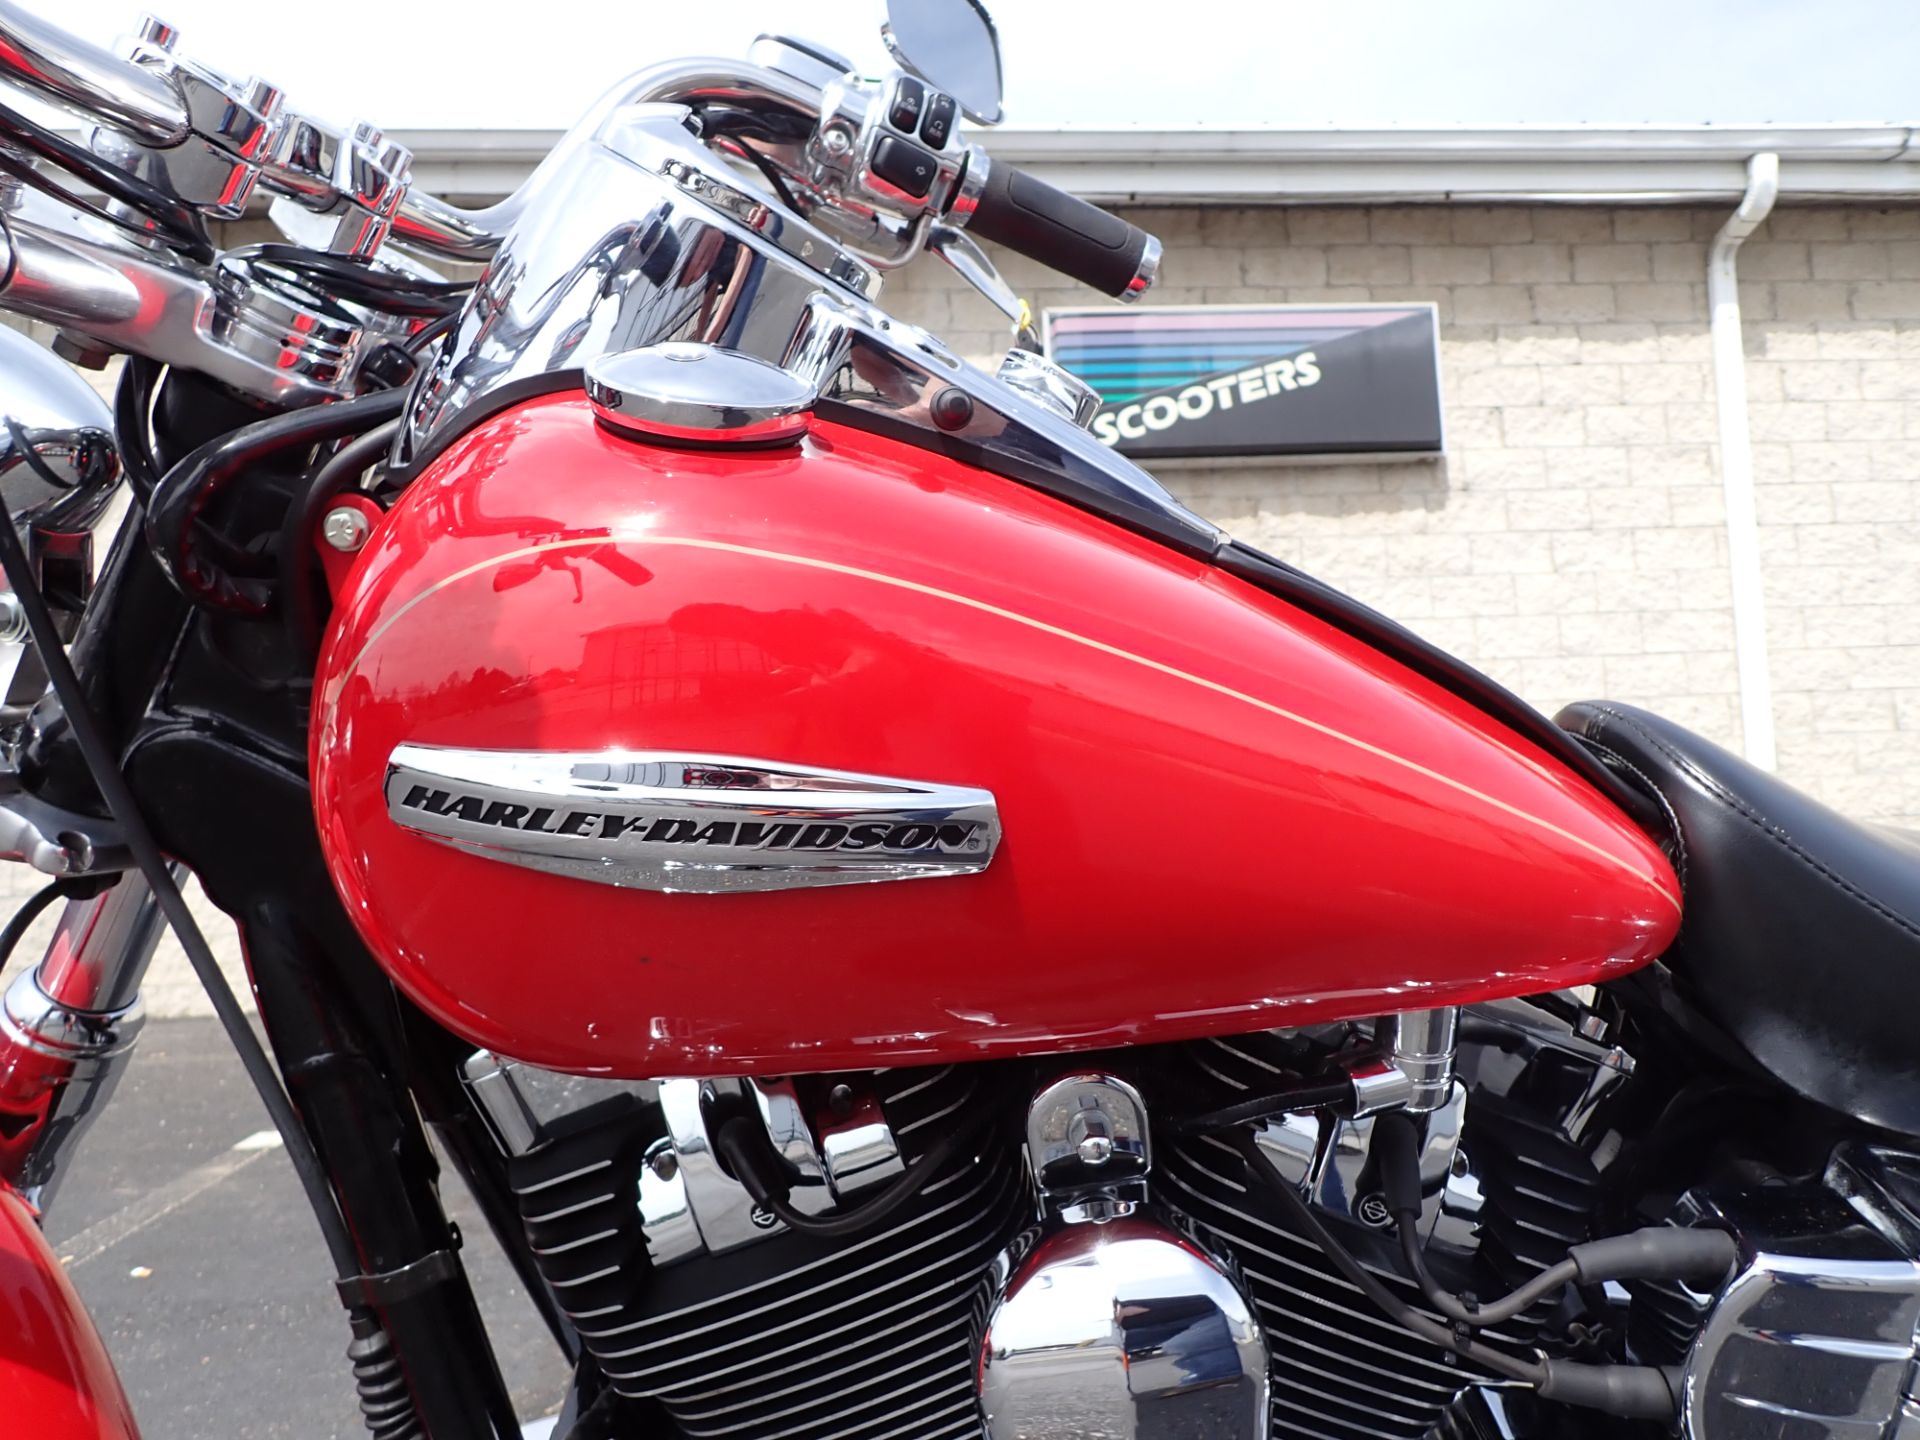 2010 Harley-Davidson Dyna® Super Glide® Custom in Massillon, Ohio - Photo 10